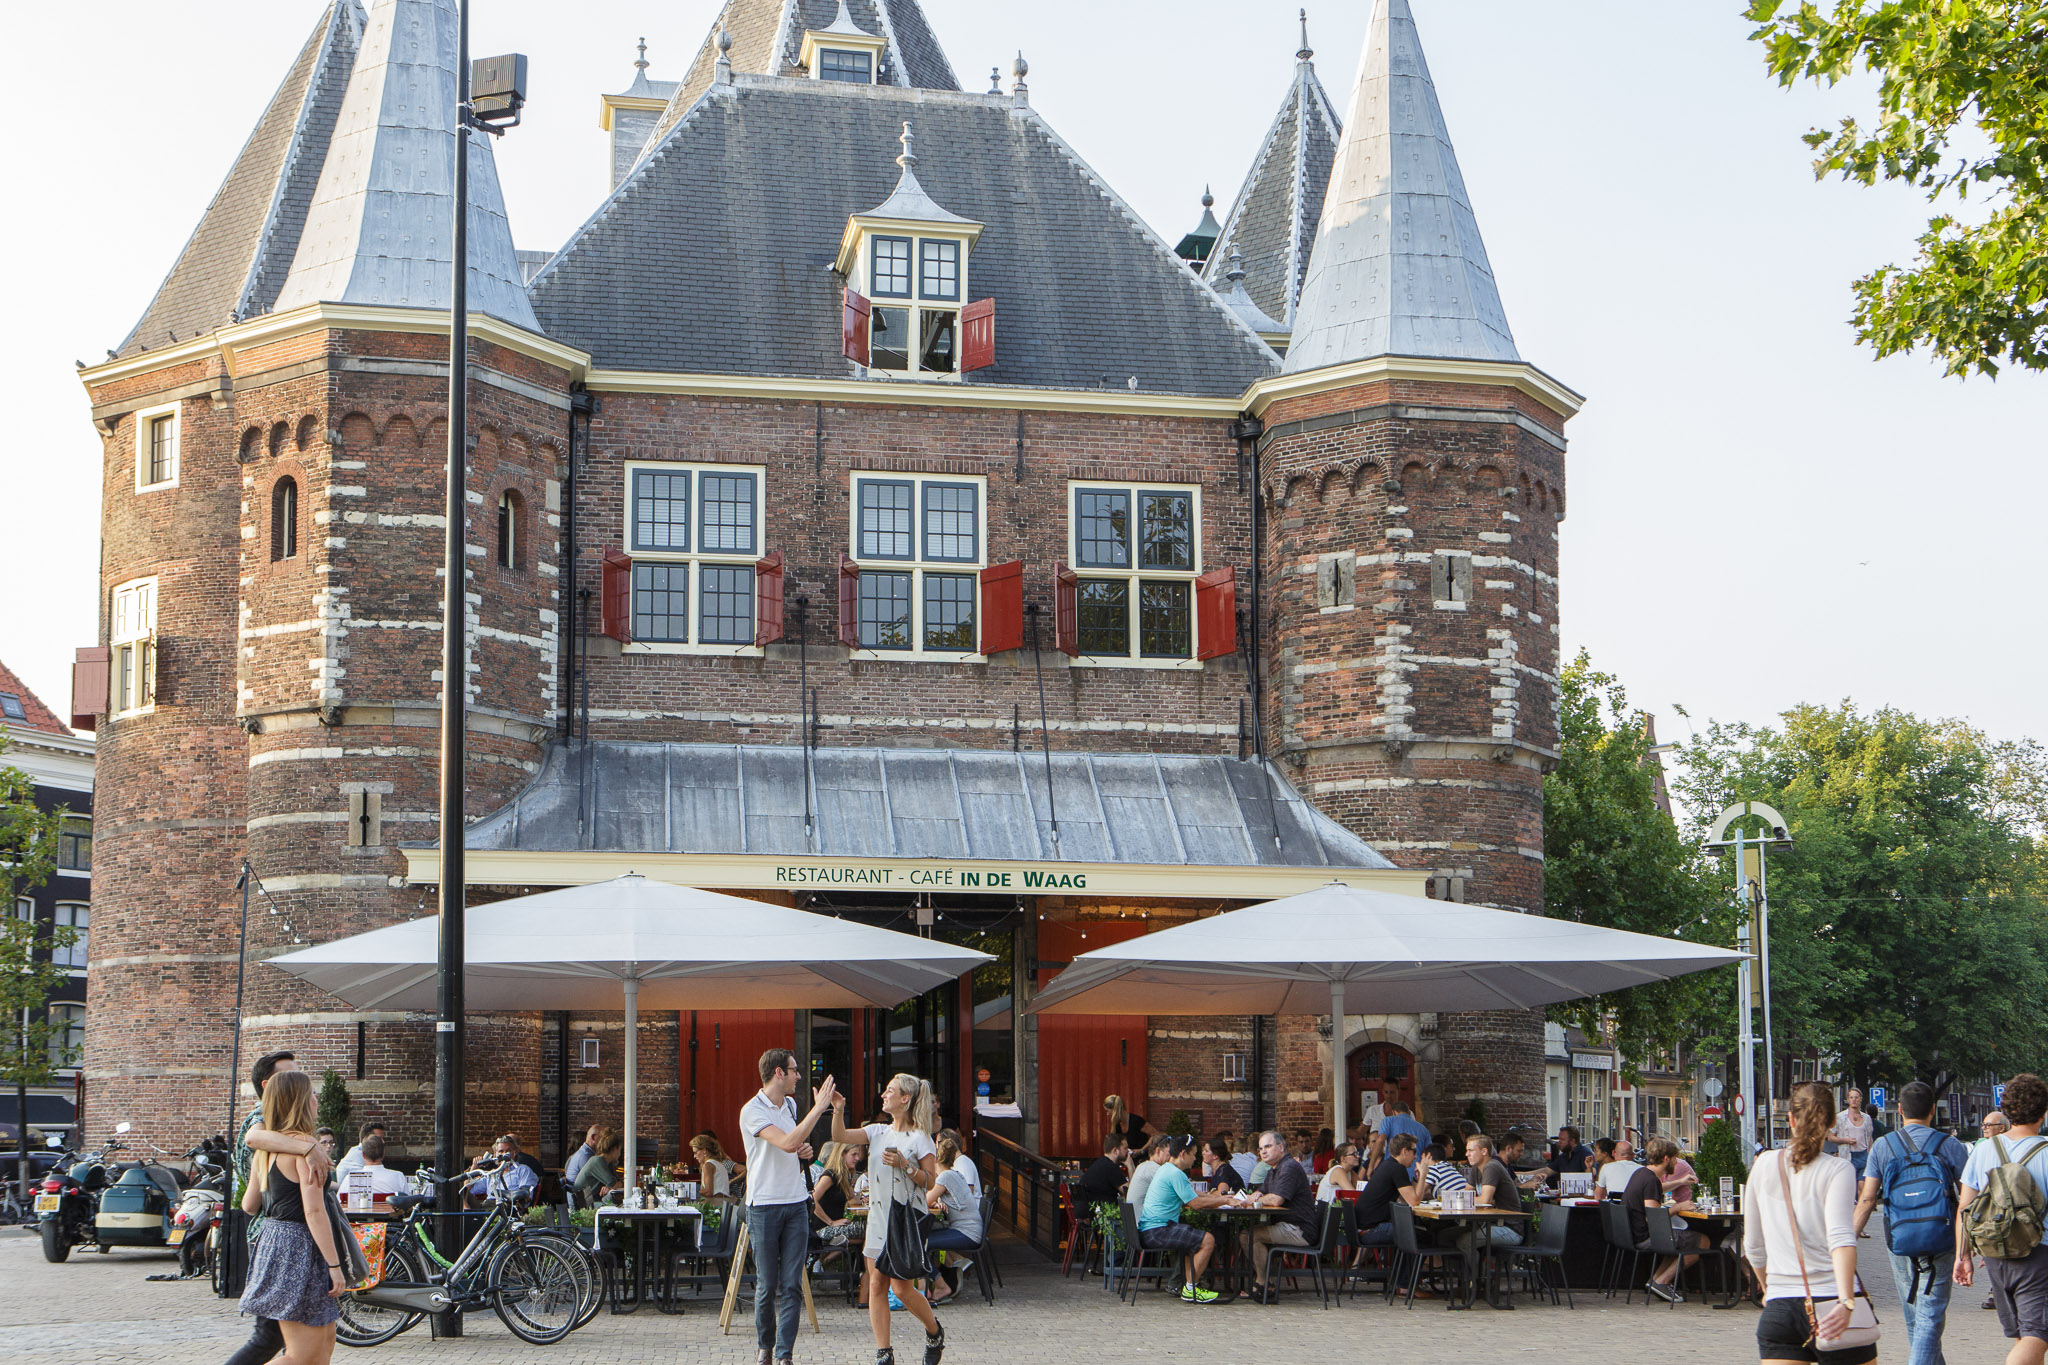 Louis Vuitton Bijenkorf Amsterdam Openingstijden